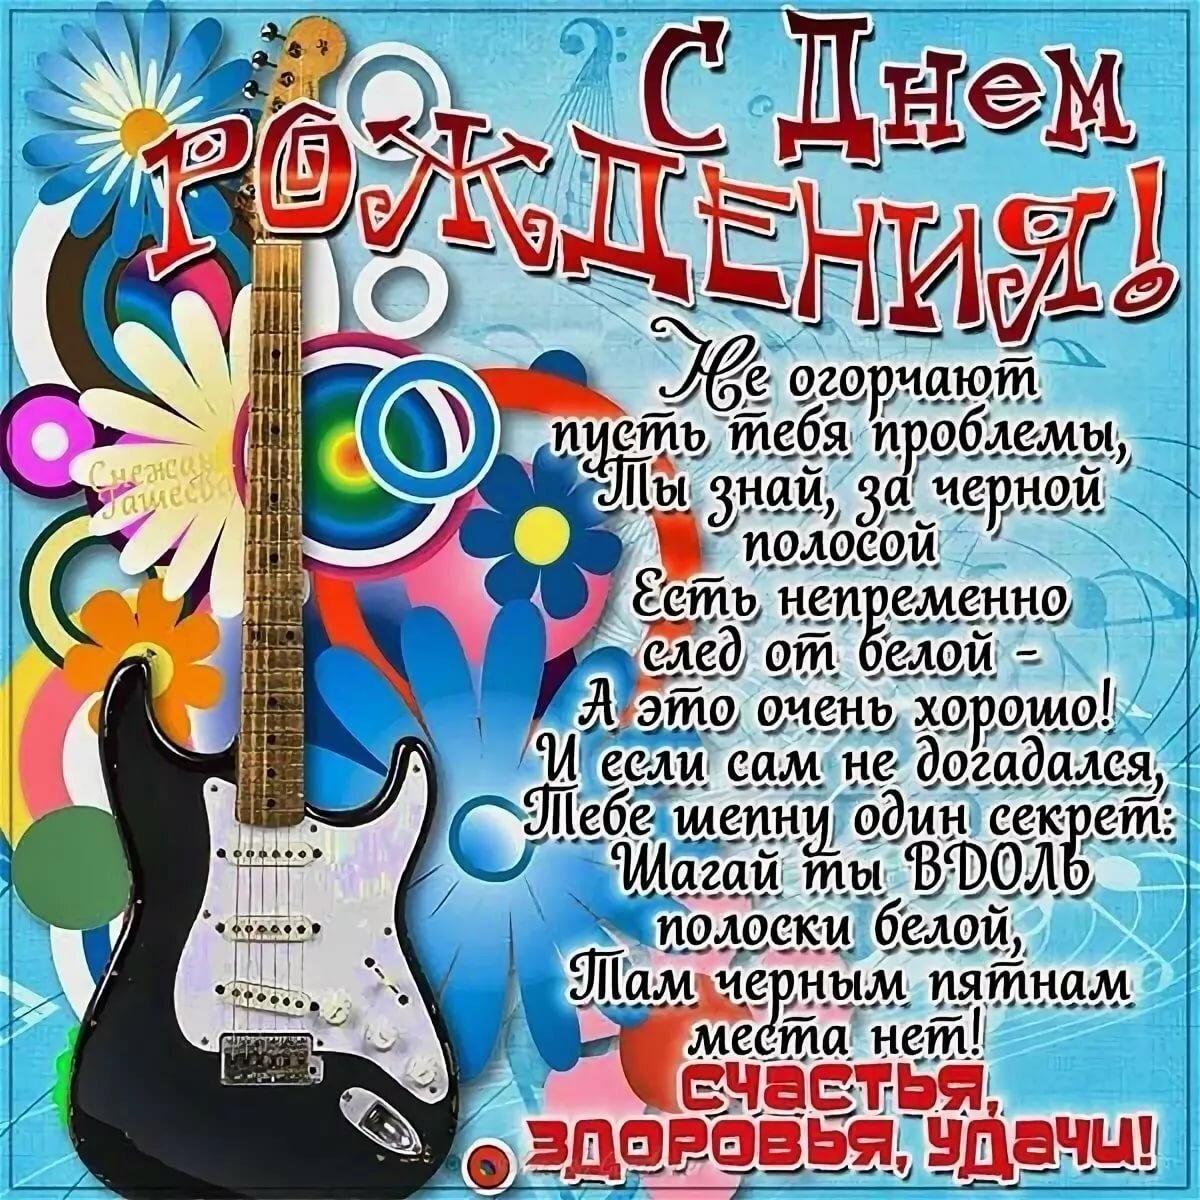 Поздравление С днём рождения мальчику открытка- Скачать бесплатно на luchistii-sudak.ru